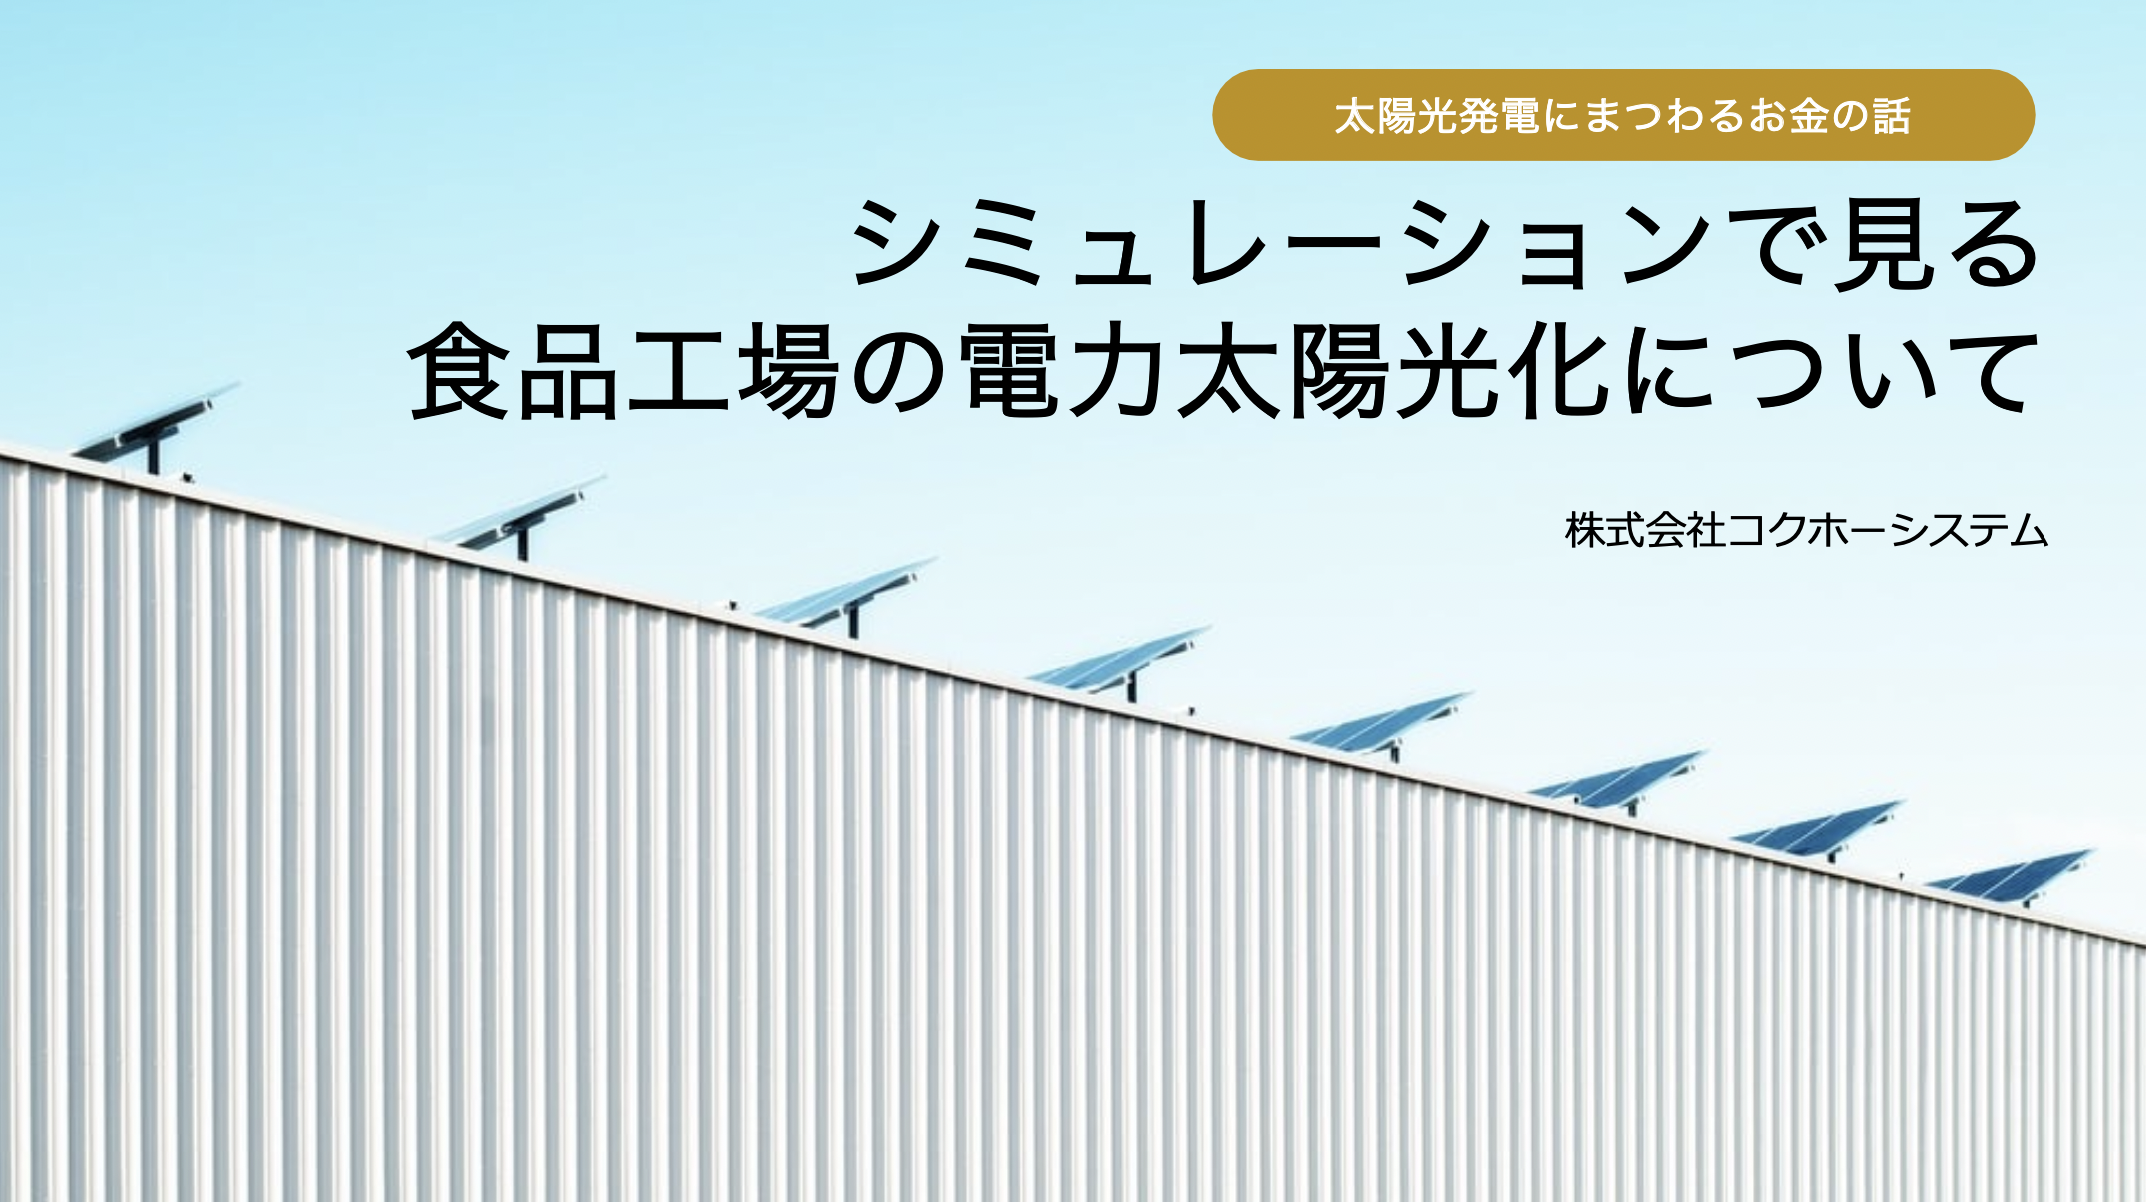 【ダウンロード資料】食品工場での太陽光化シミュレーション